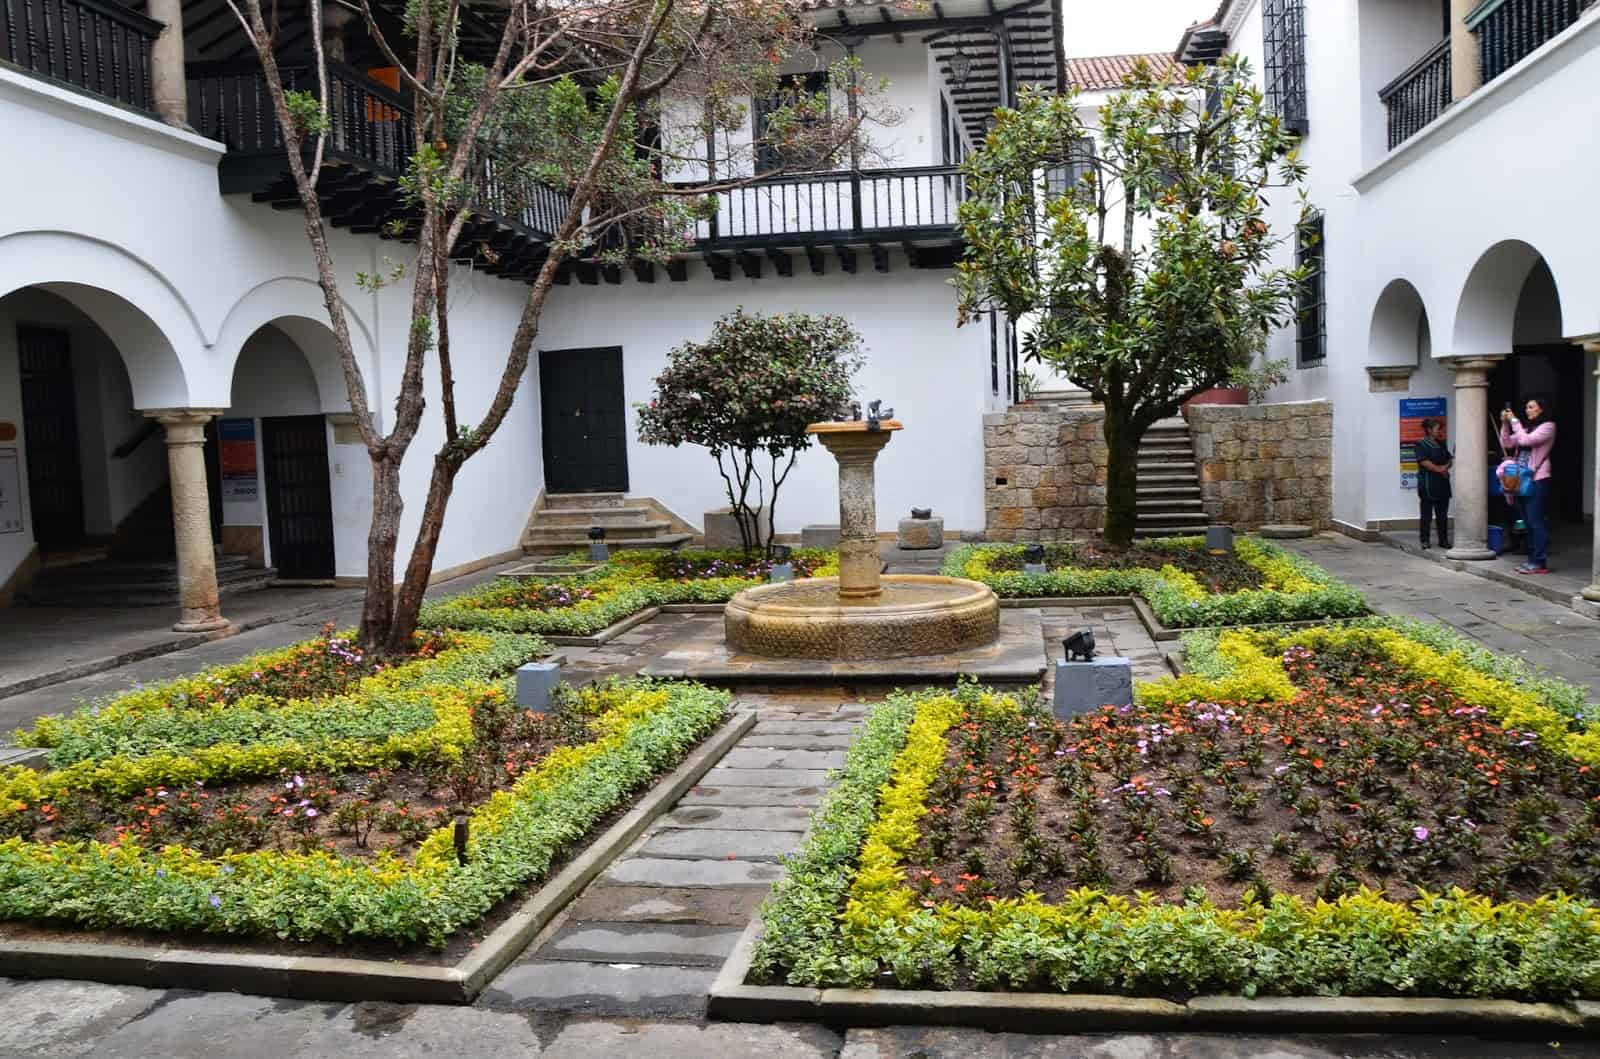 Courtyard of Casa de Moneda in La Candelaria, Bogotá, Colombia